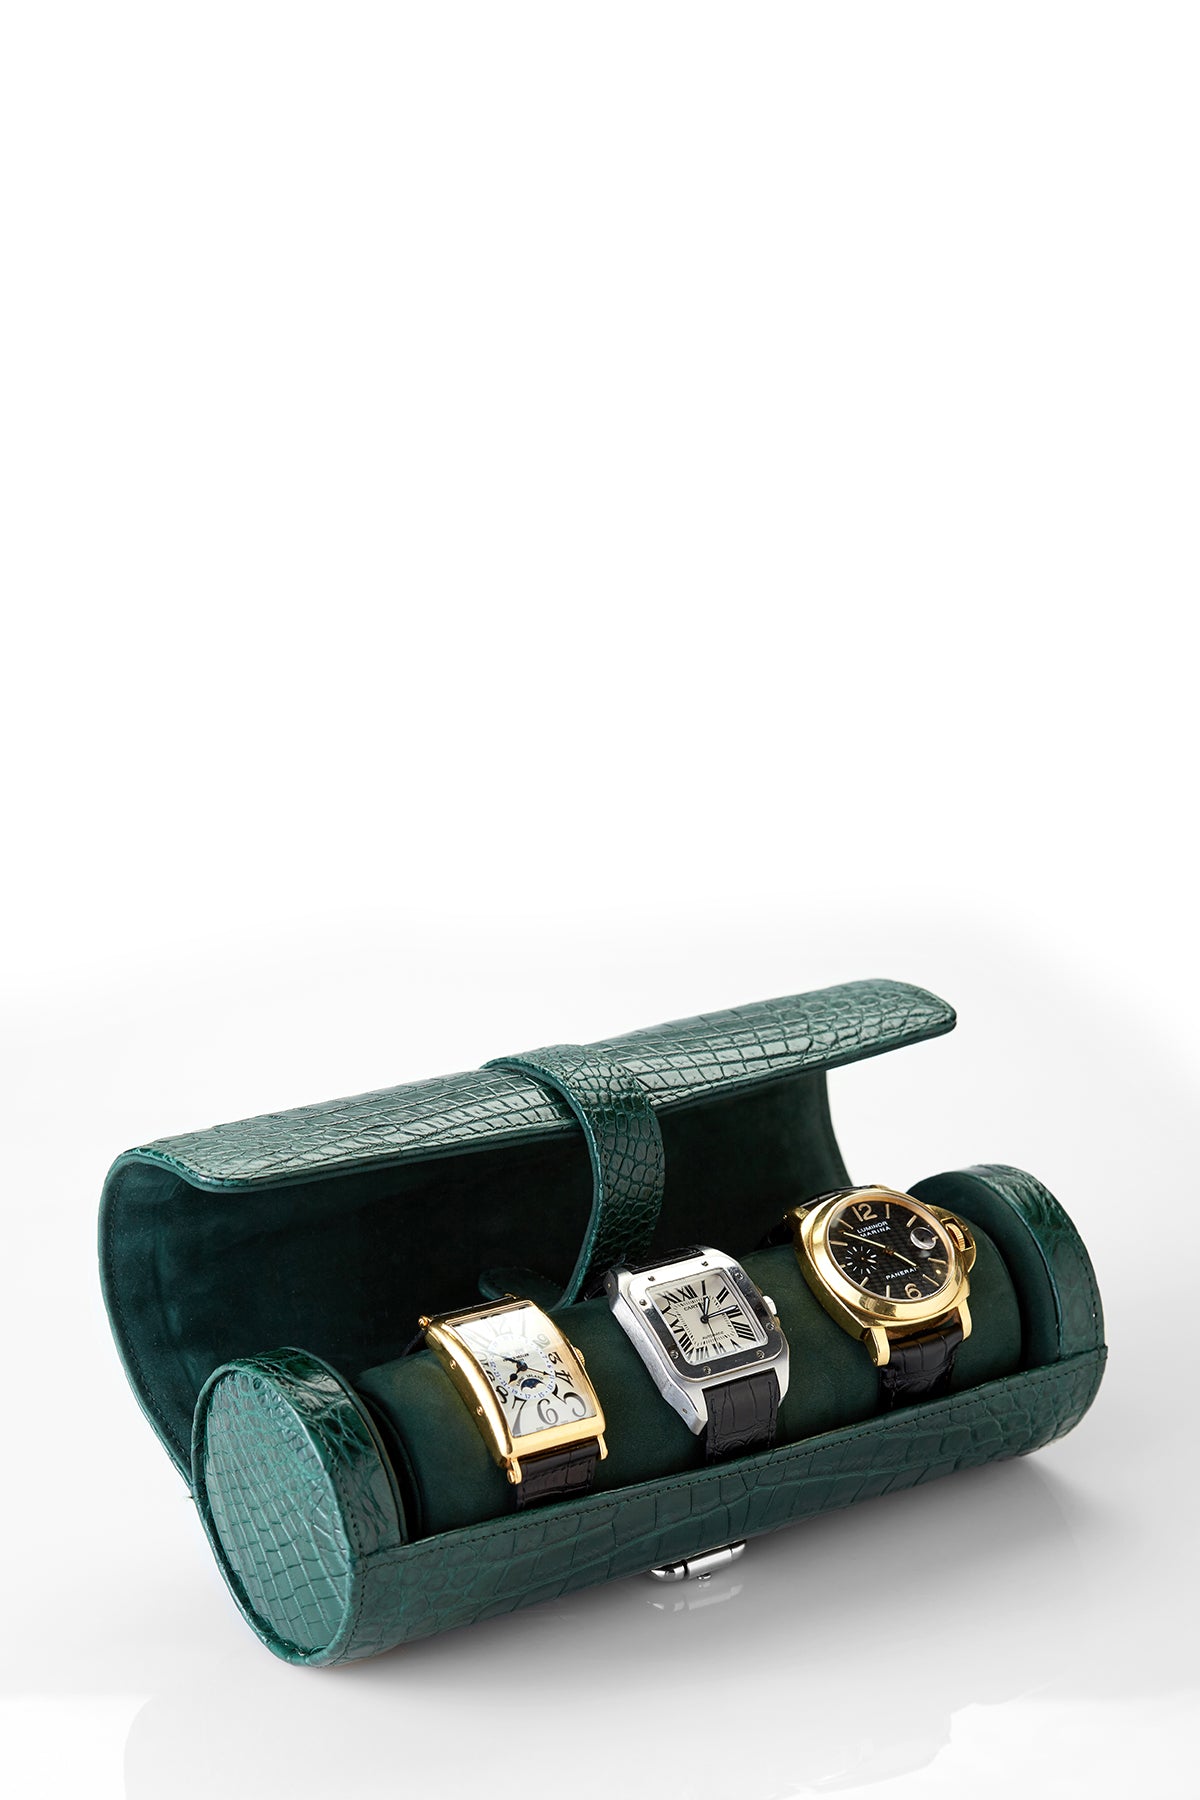 Green Leather ZEALANDE® Watch Rolls